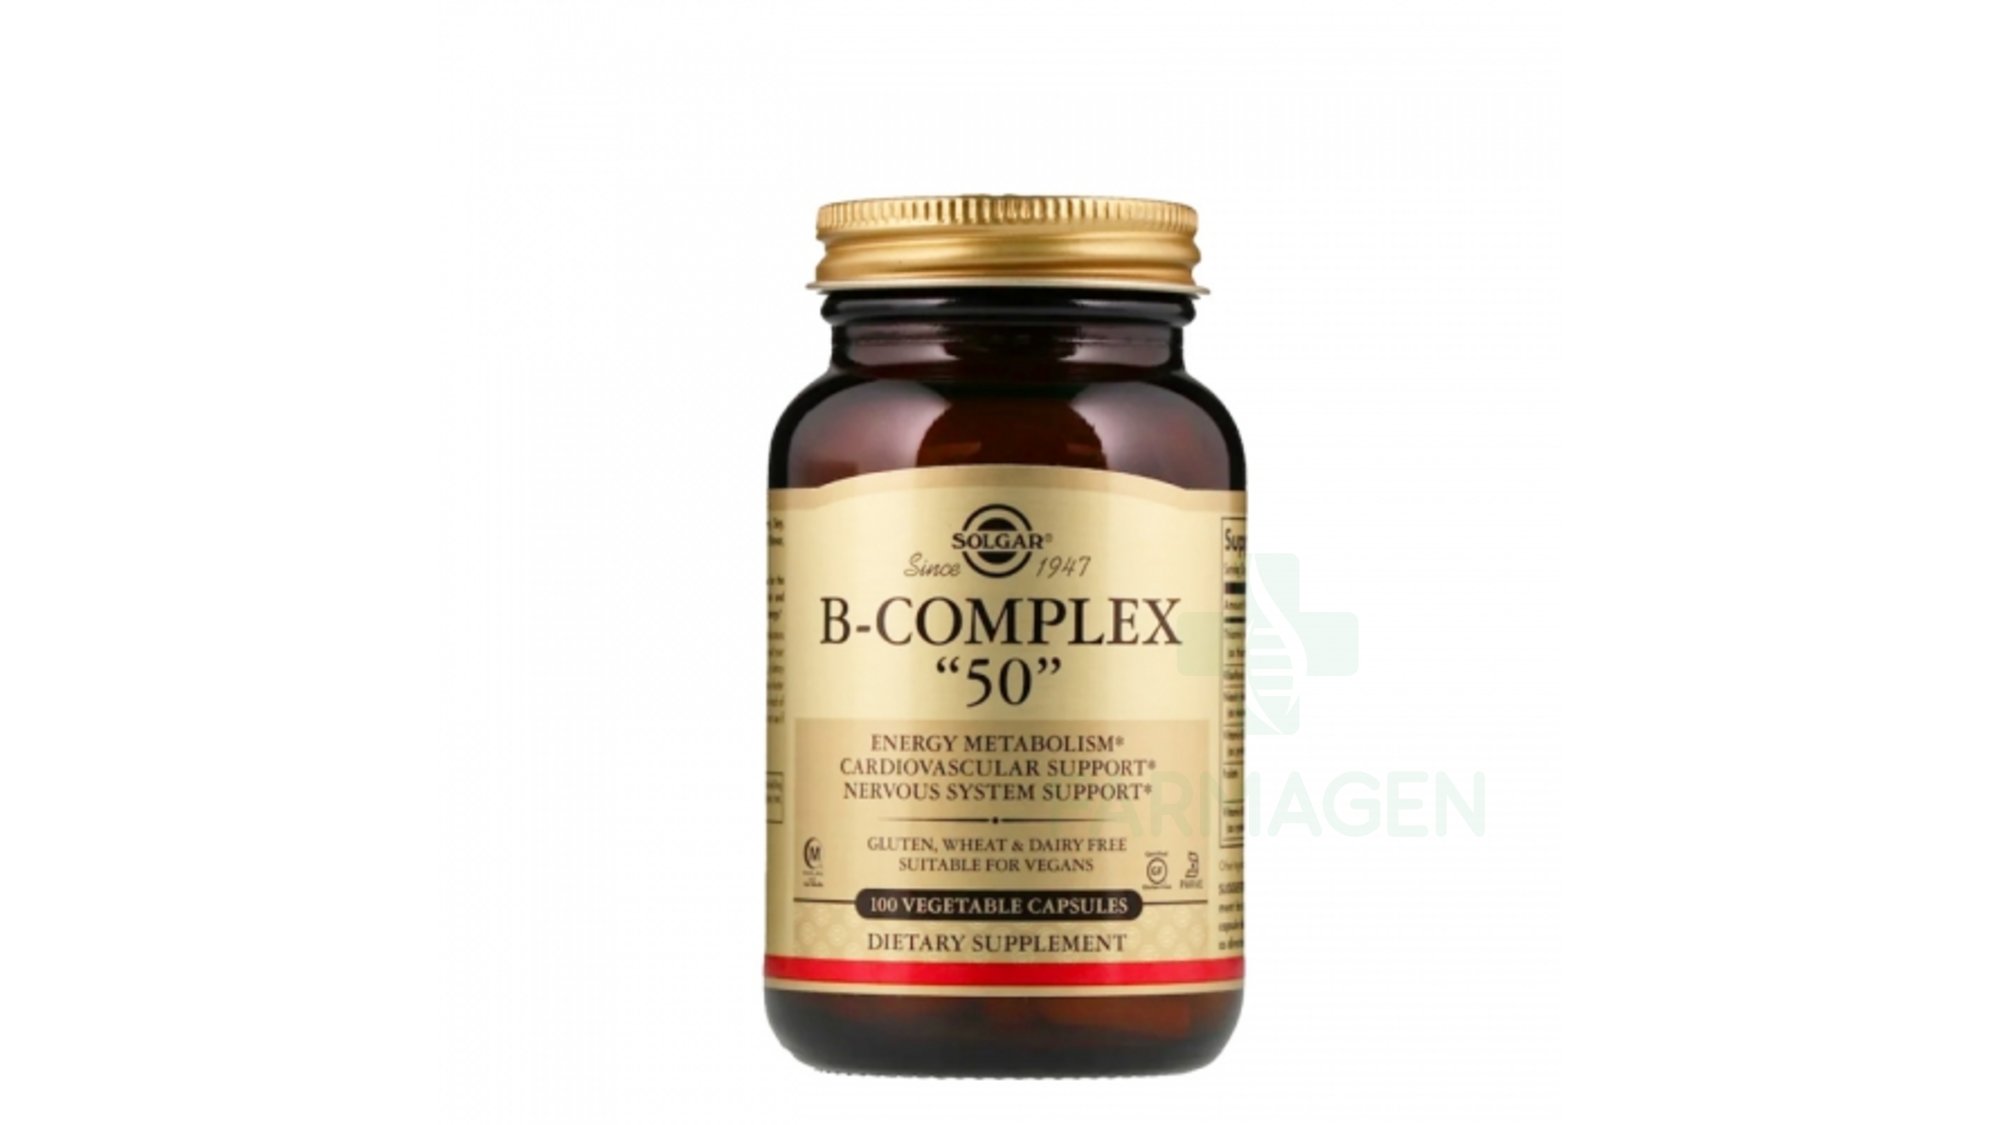 Vitamin B-Complex ”50”